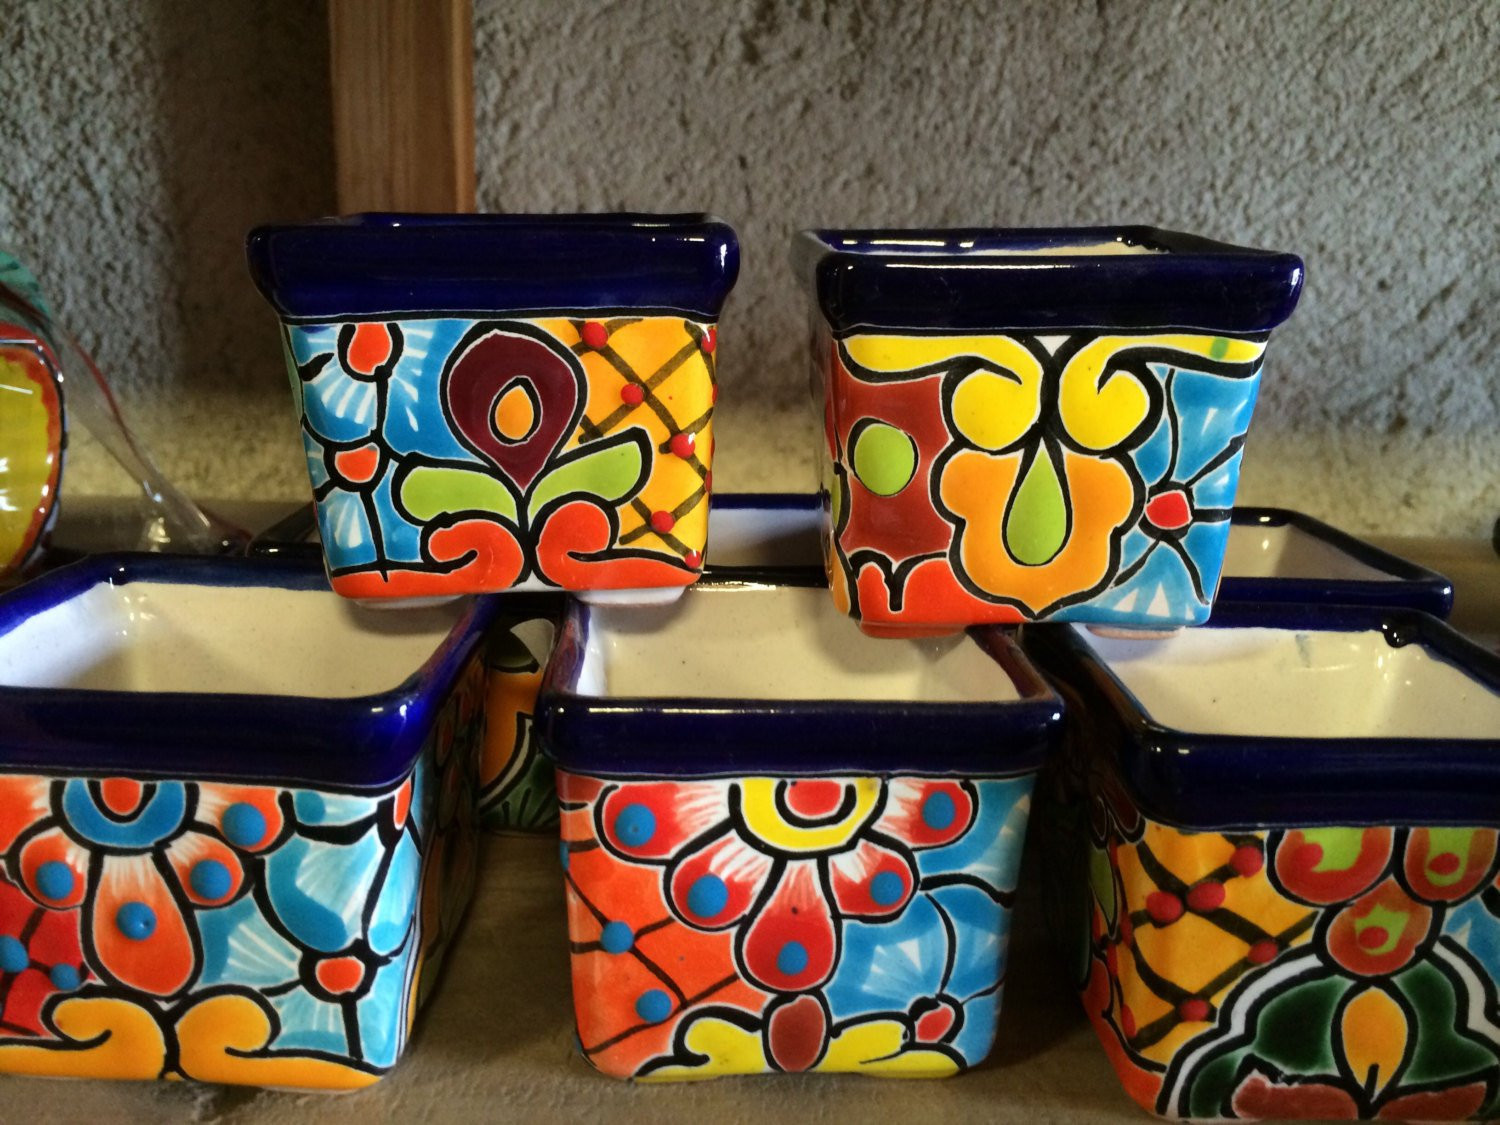 16 Unique Mexican Talavera Vases 2024 free download mexican talavera vases of mini pottery 60 pieces 2x2 inches party favor destination etsy regarding dc29fc294c28ezoom